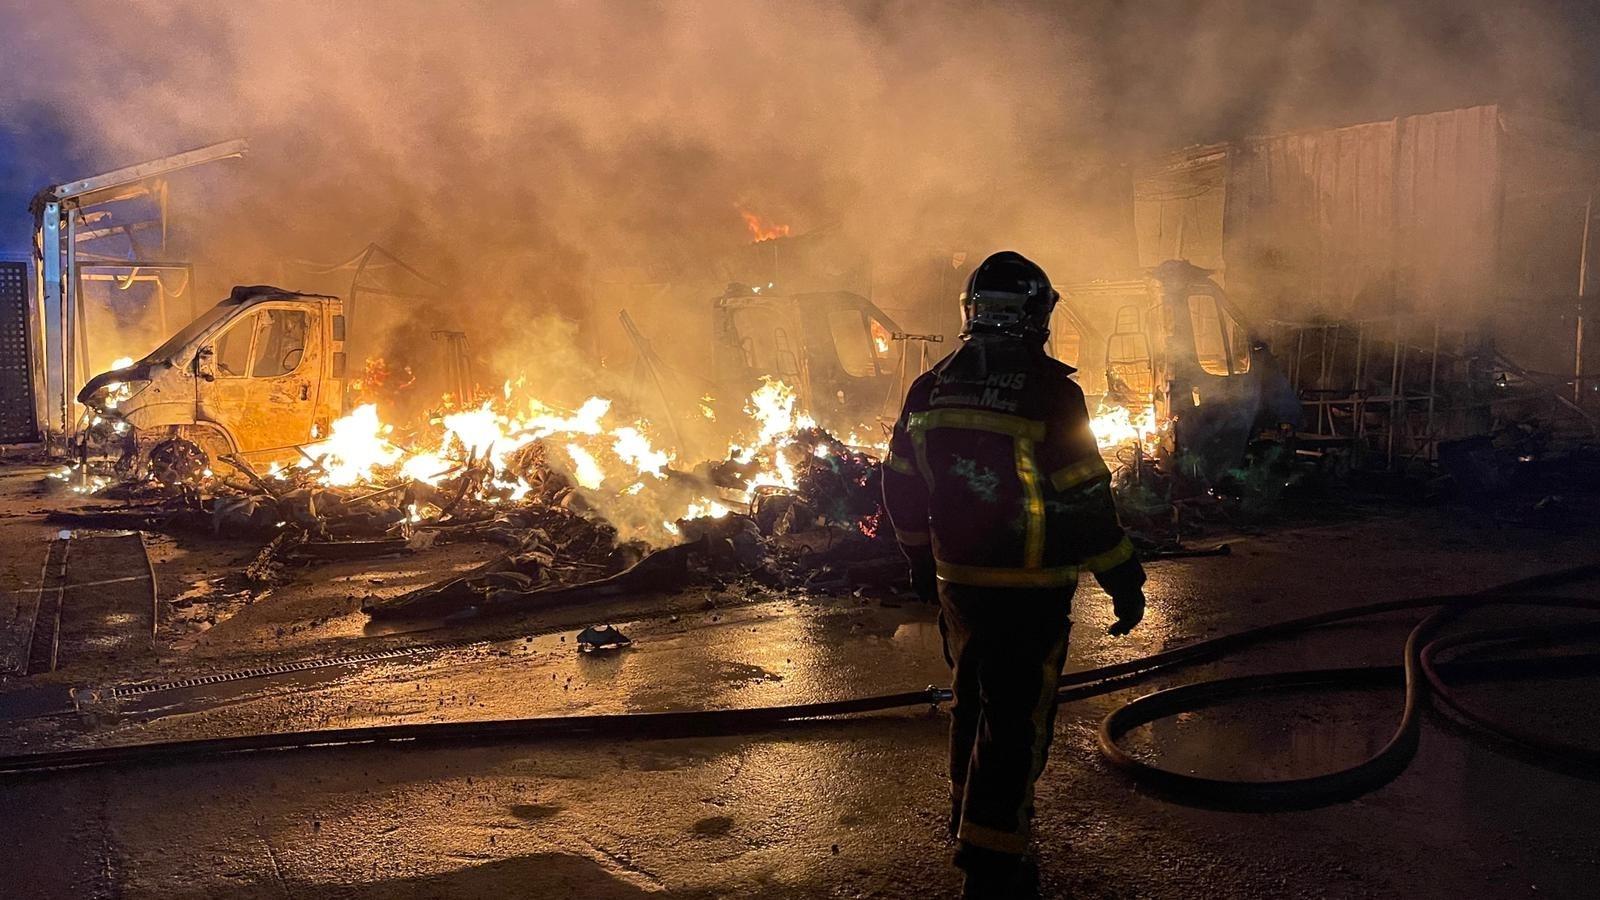 Aparatoso incendio en un aparcamiento de caravanas en Alcalá de Henares. Foto: Emergencias 112